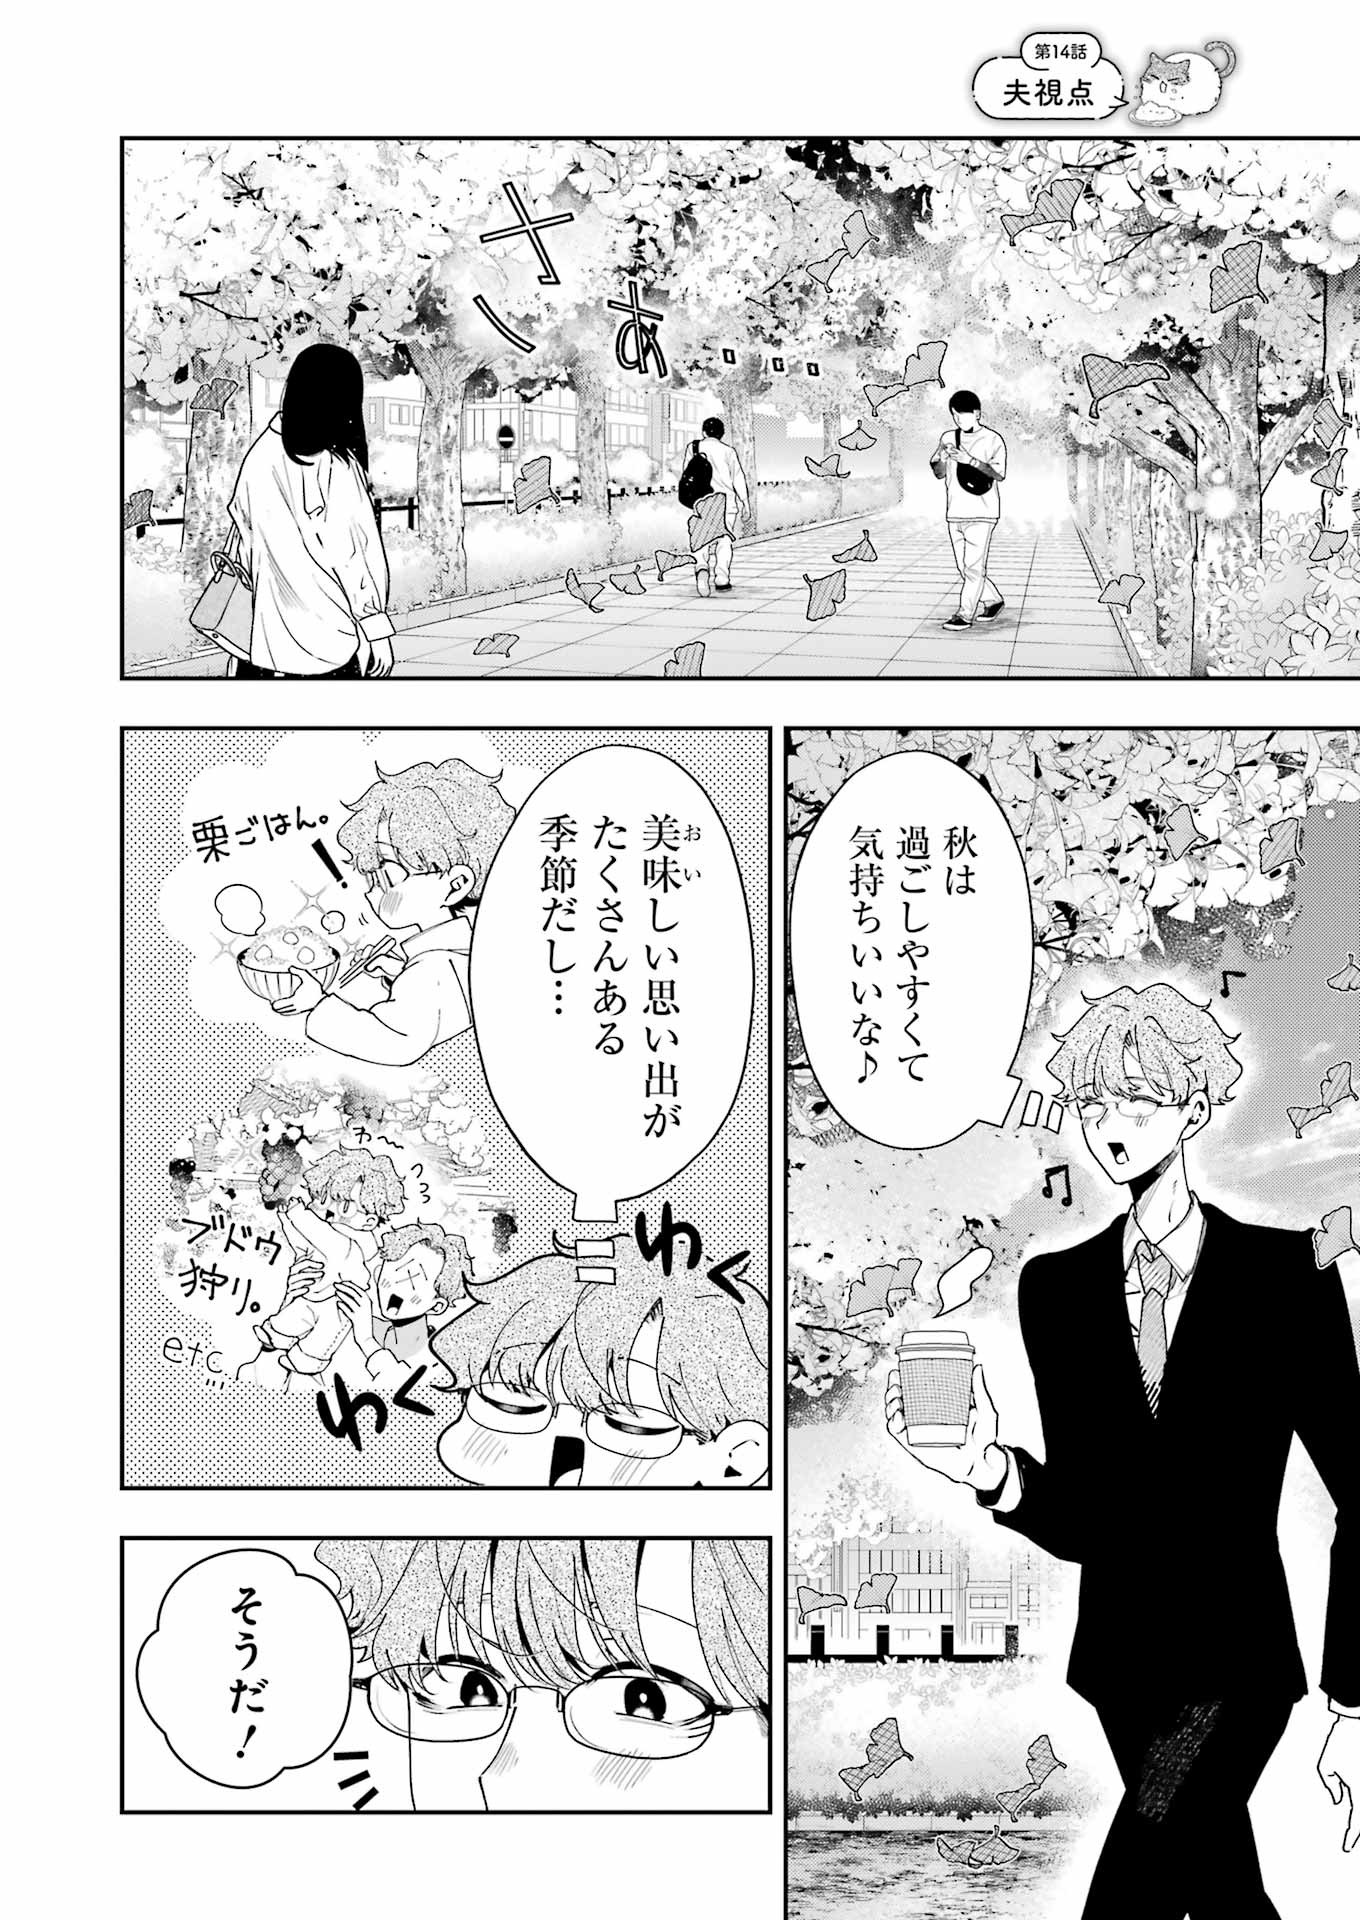 Tsuma wa Boku wo Futorasetai! - Chapter 14 - Page 2